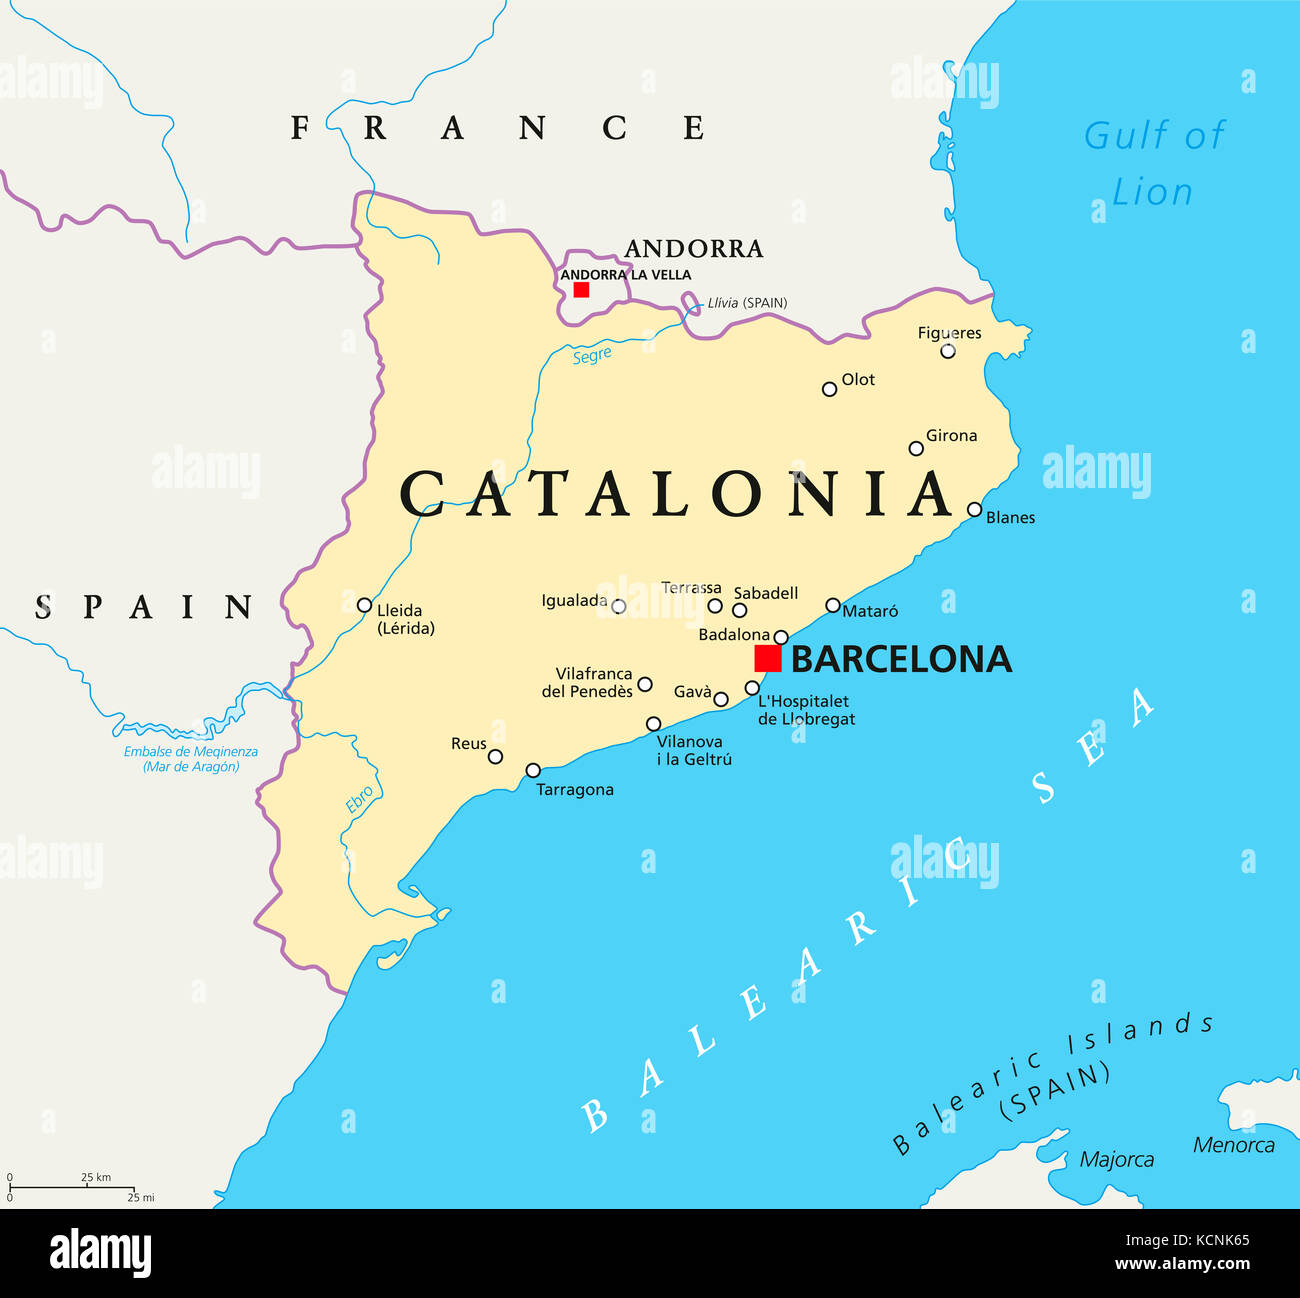 Katalonien Politische Karte Mit Der Hauptstadt Barcelona Grenzen Und Wichtige Stadte Autonome Gemeinschaft Spaniens Auf Der Iberischen Halbinsel Abbildung Stockfotografie Alamy